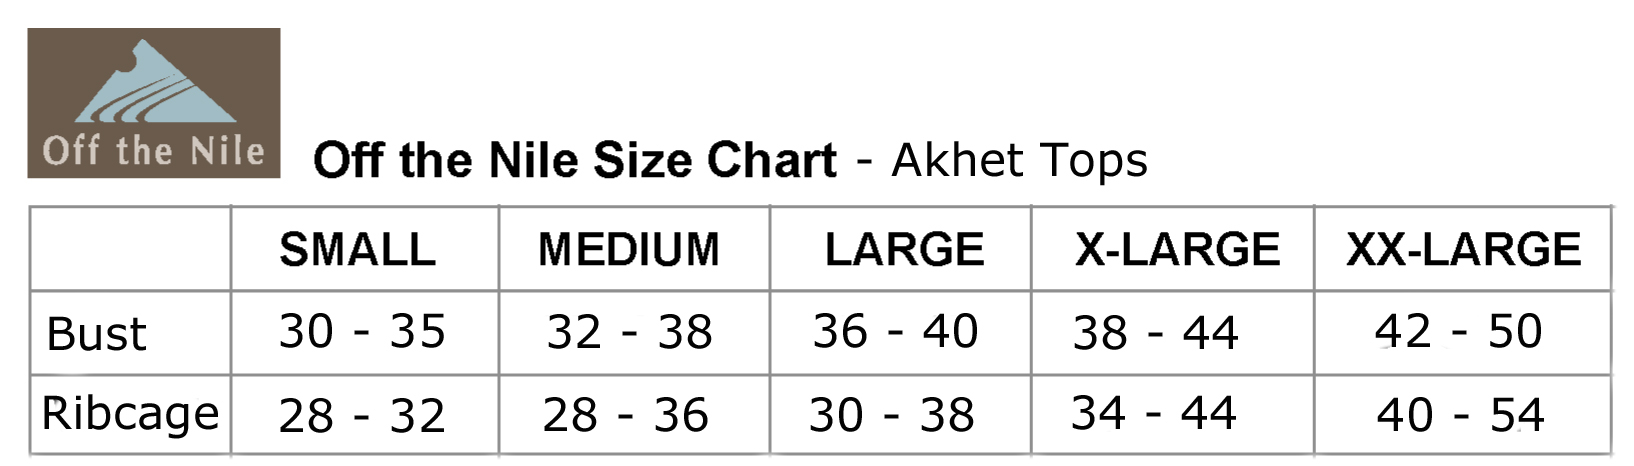 size-chart-akhet-tops.jpg